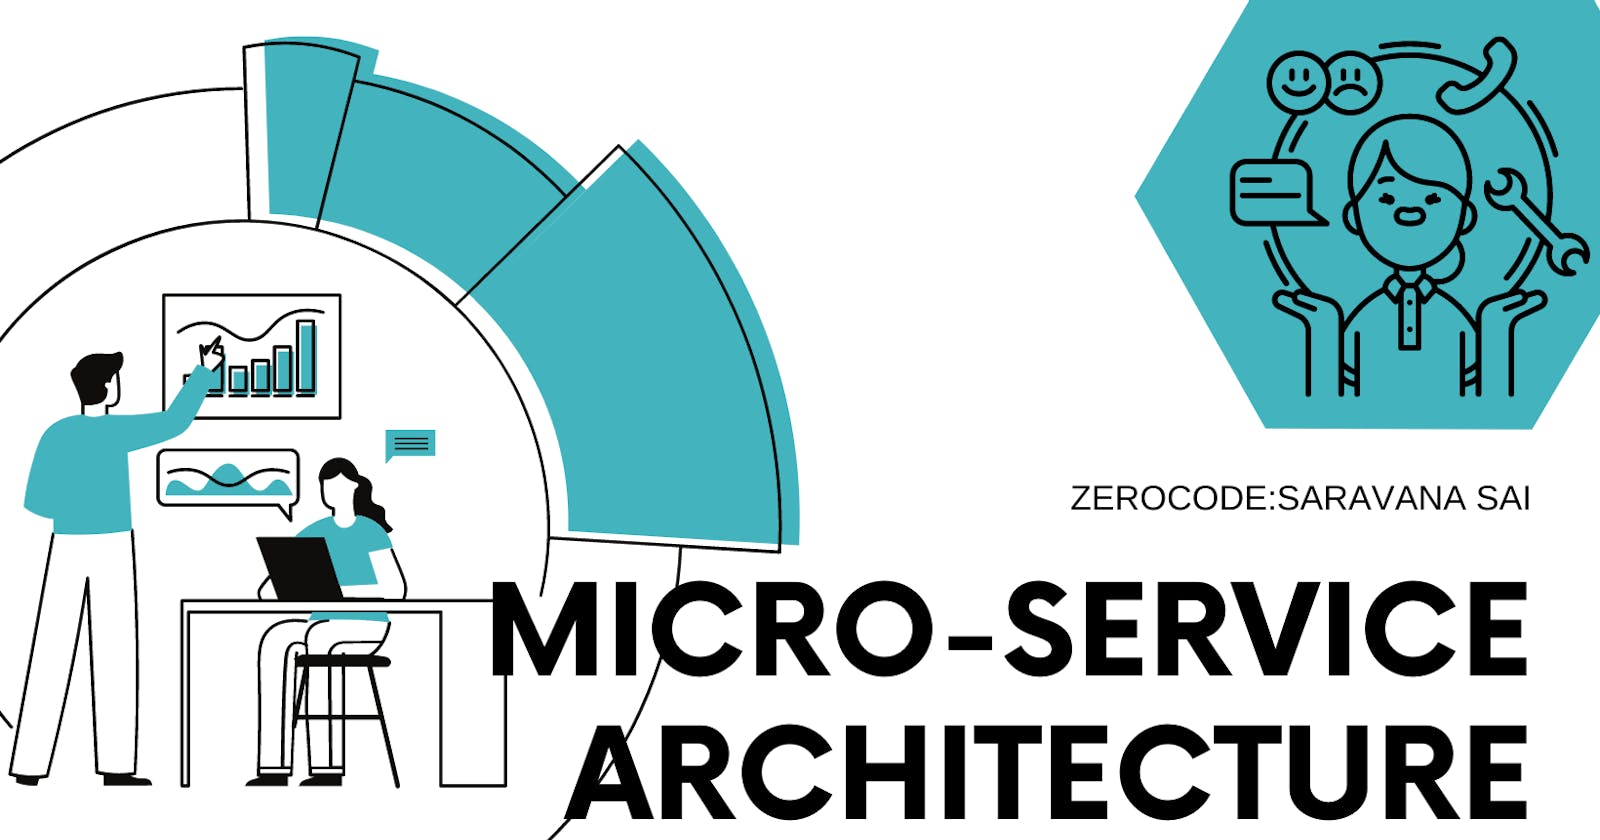 Why Micro Service Architecture?